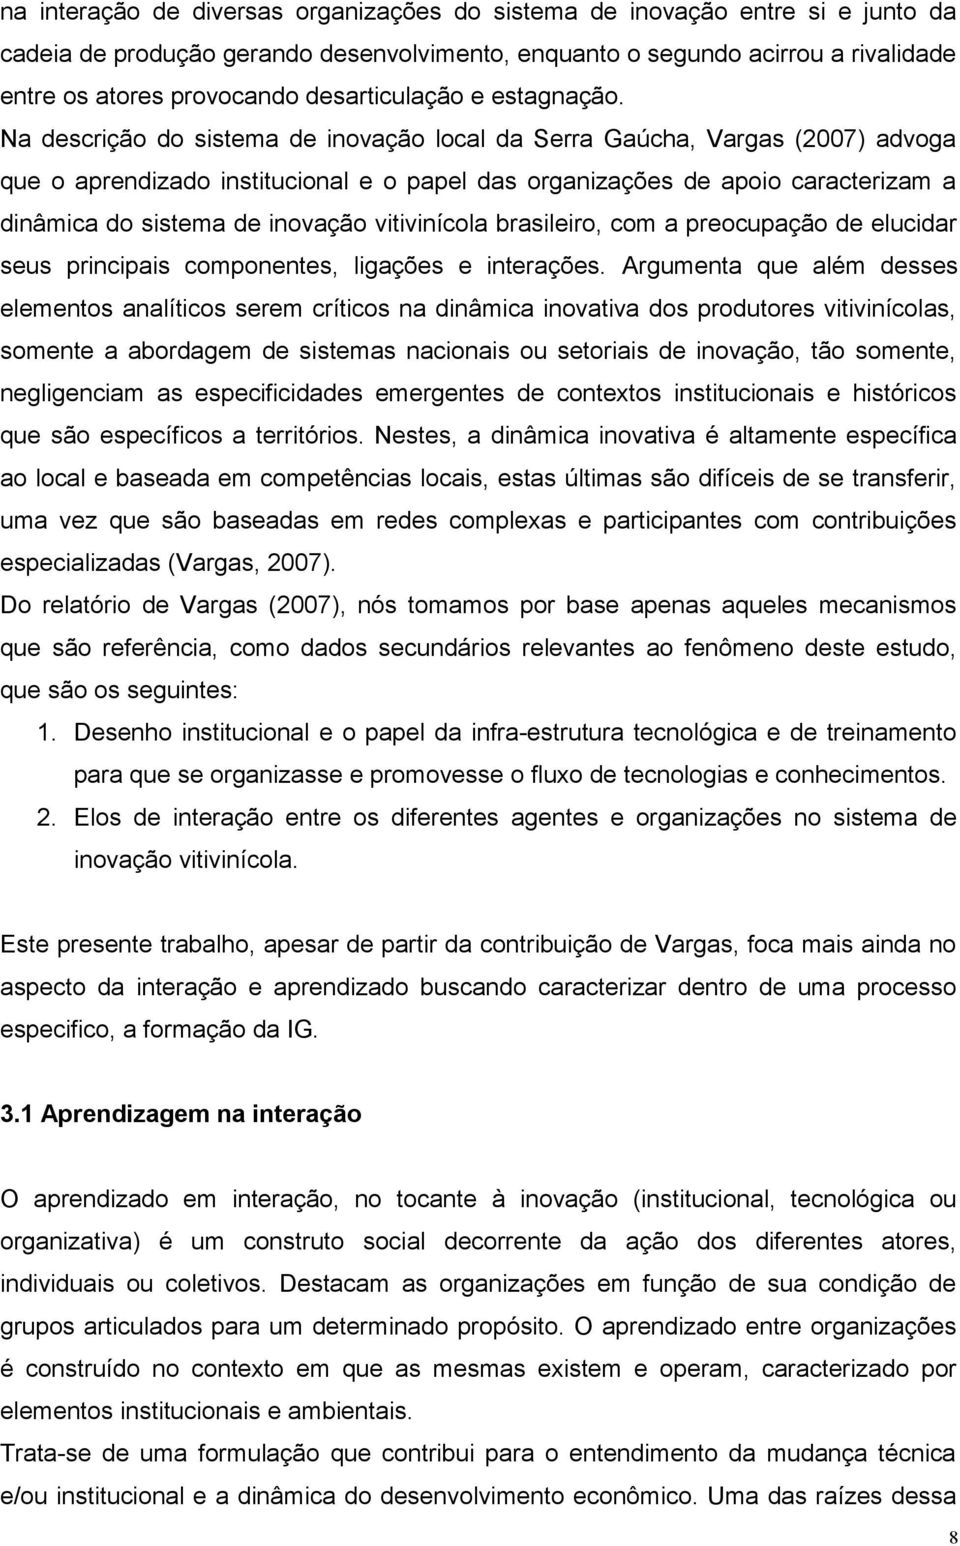 Na descrição do sistema de inovação local da Serra Gaúcha, Vargas (2007) advoga que o aprendizado institucional e o papel das organizações de apoio caracterizam a dinâmica do sistema de inovação